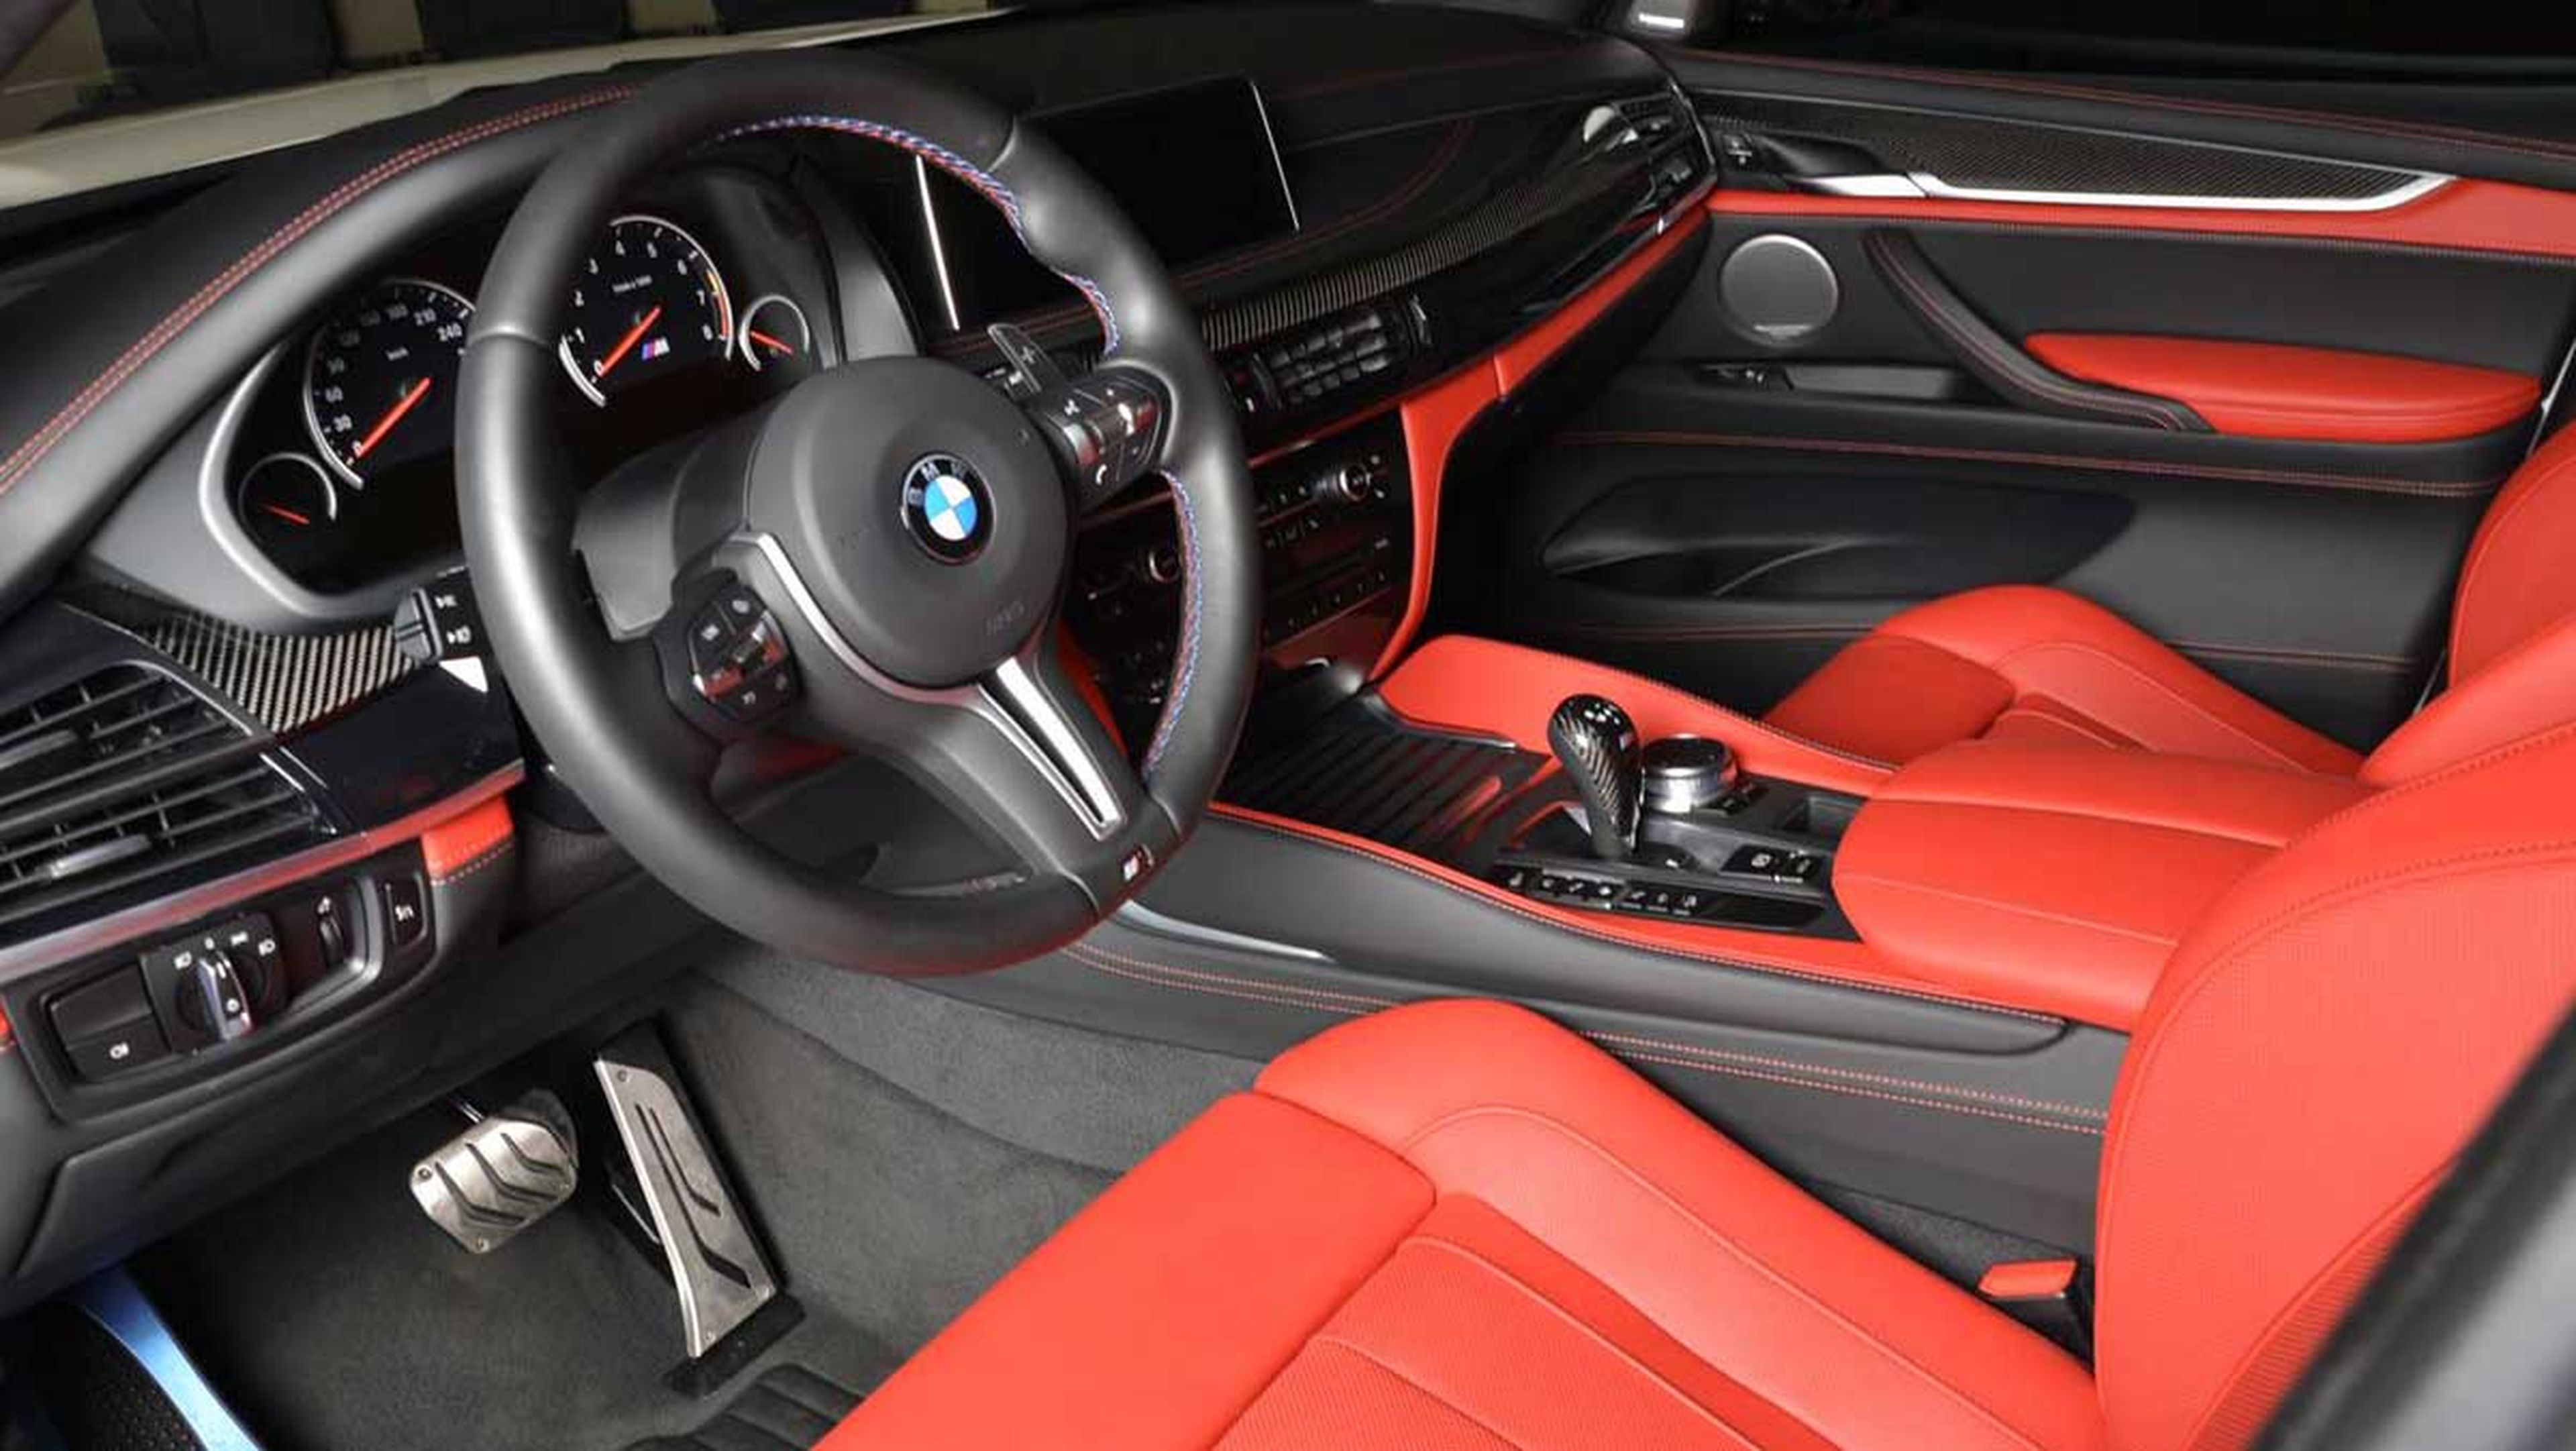 BMW X5 M Abu Dhabi